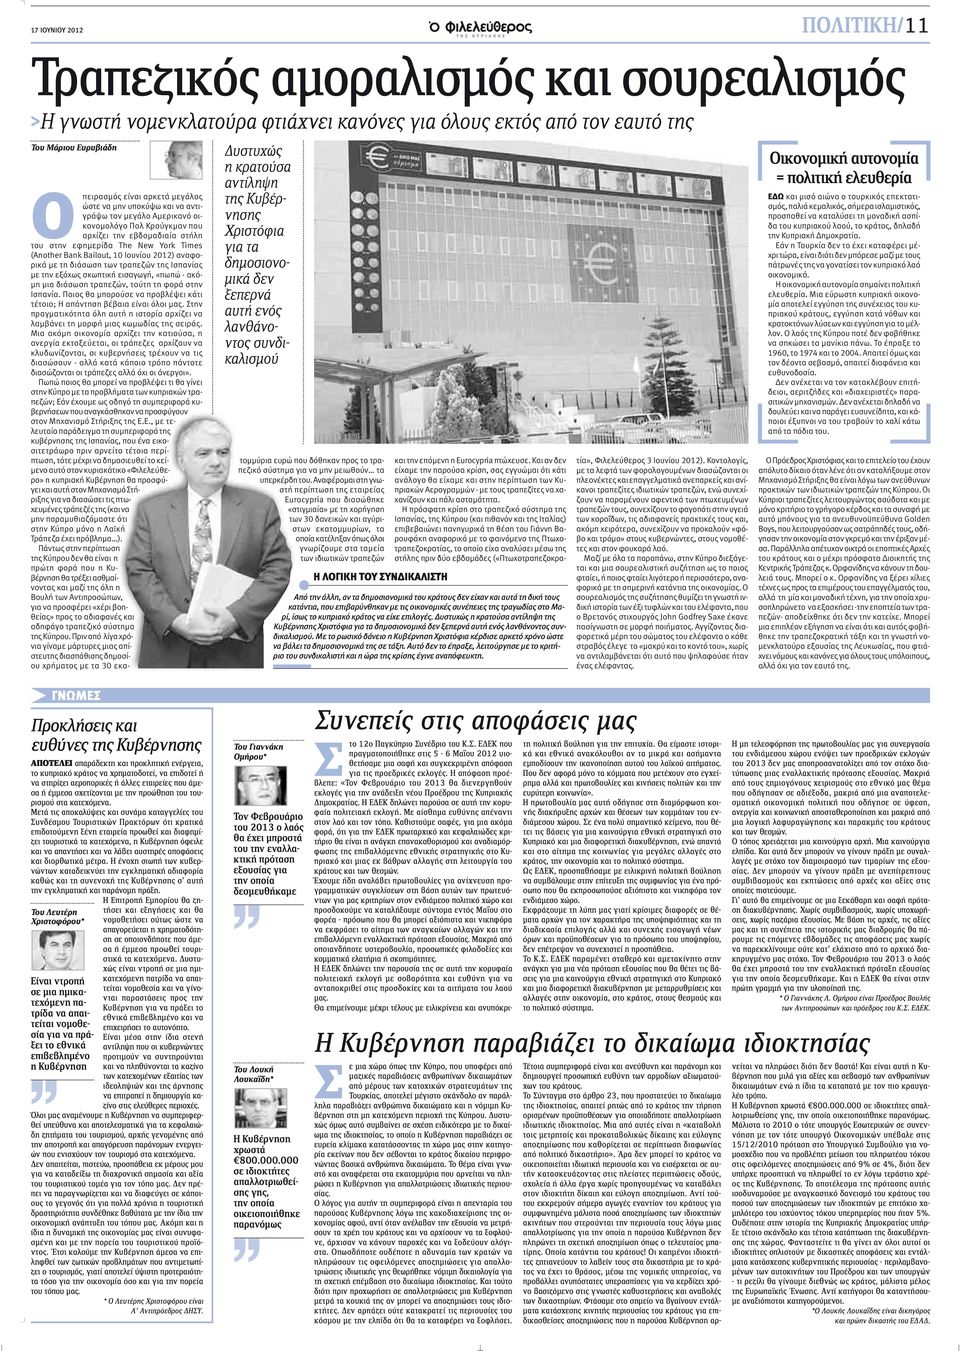 Κρούγκμαν που αρχίζει την εβδομαδιαία στήλη του στην εφημερίδα The New York Times (Another Bank Bailout, 10 Ιουνίου 2012) αναφορικά με τη διάσωση των τραπεζών της Ισπανίας με την εξόχως σκωπτική